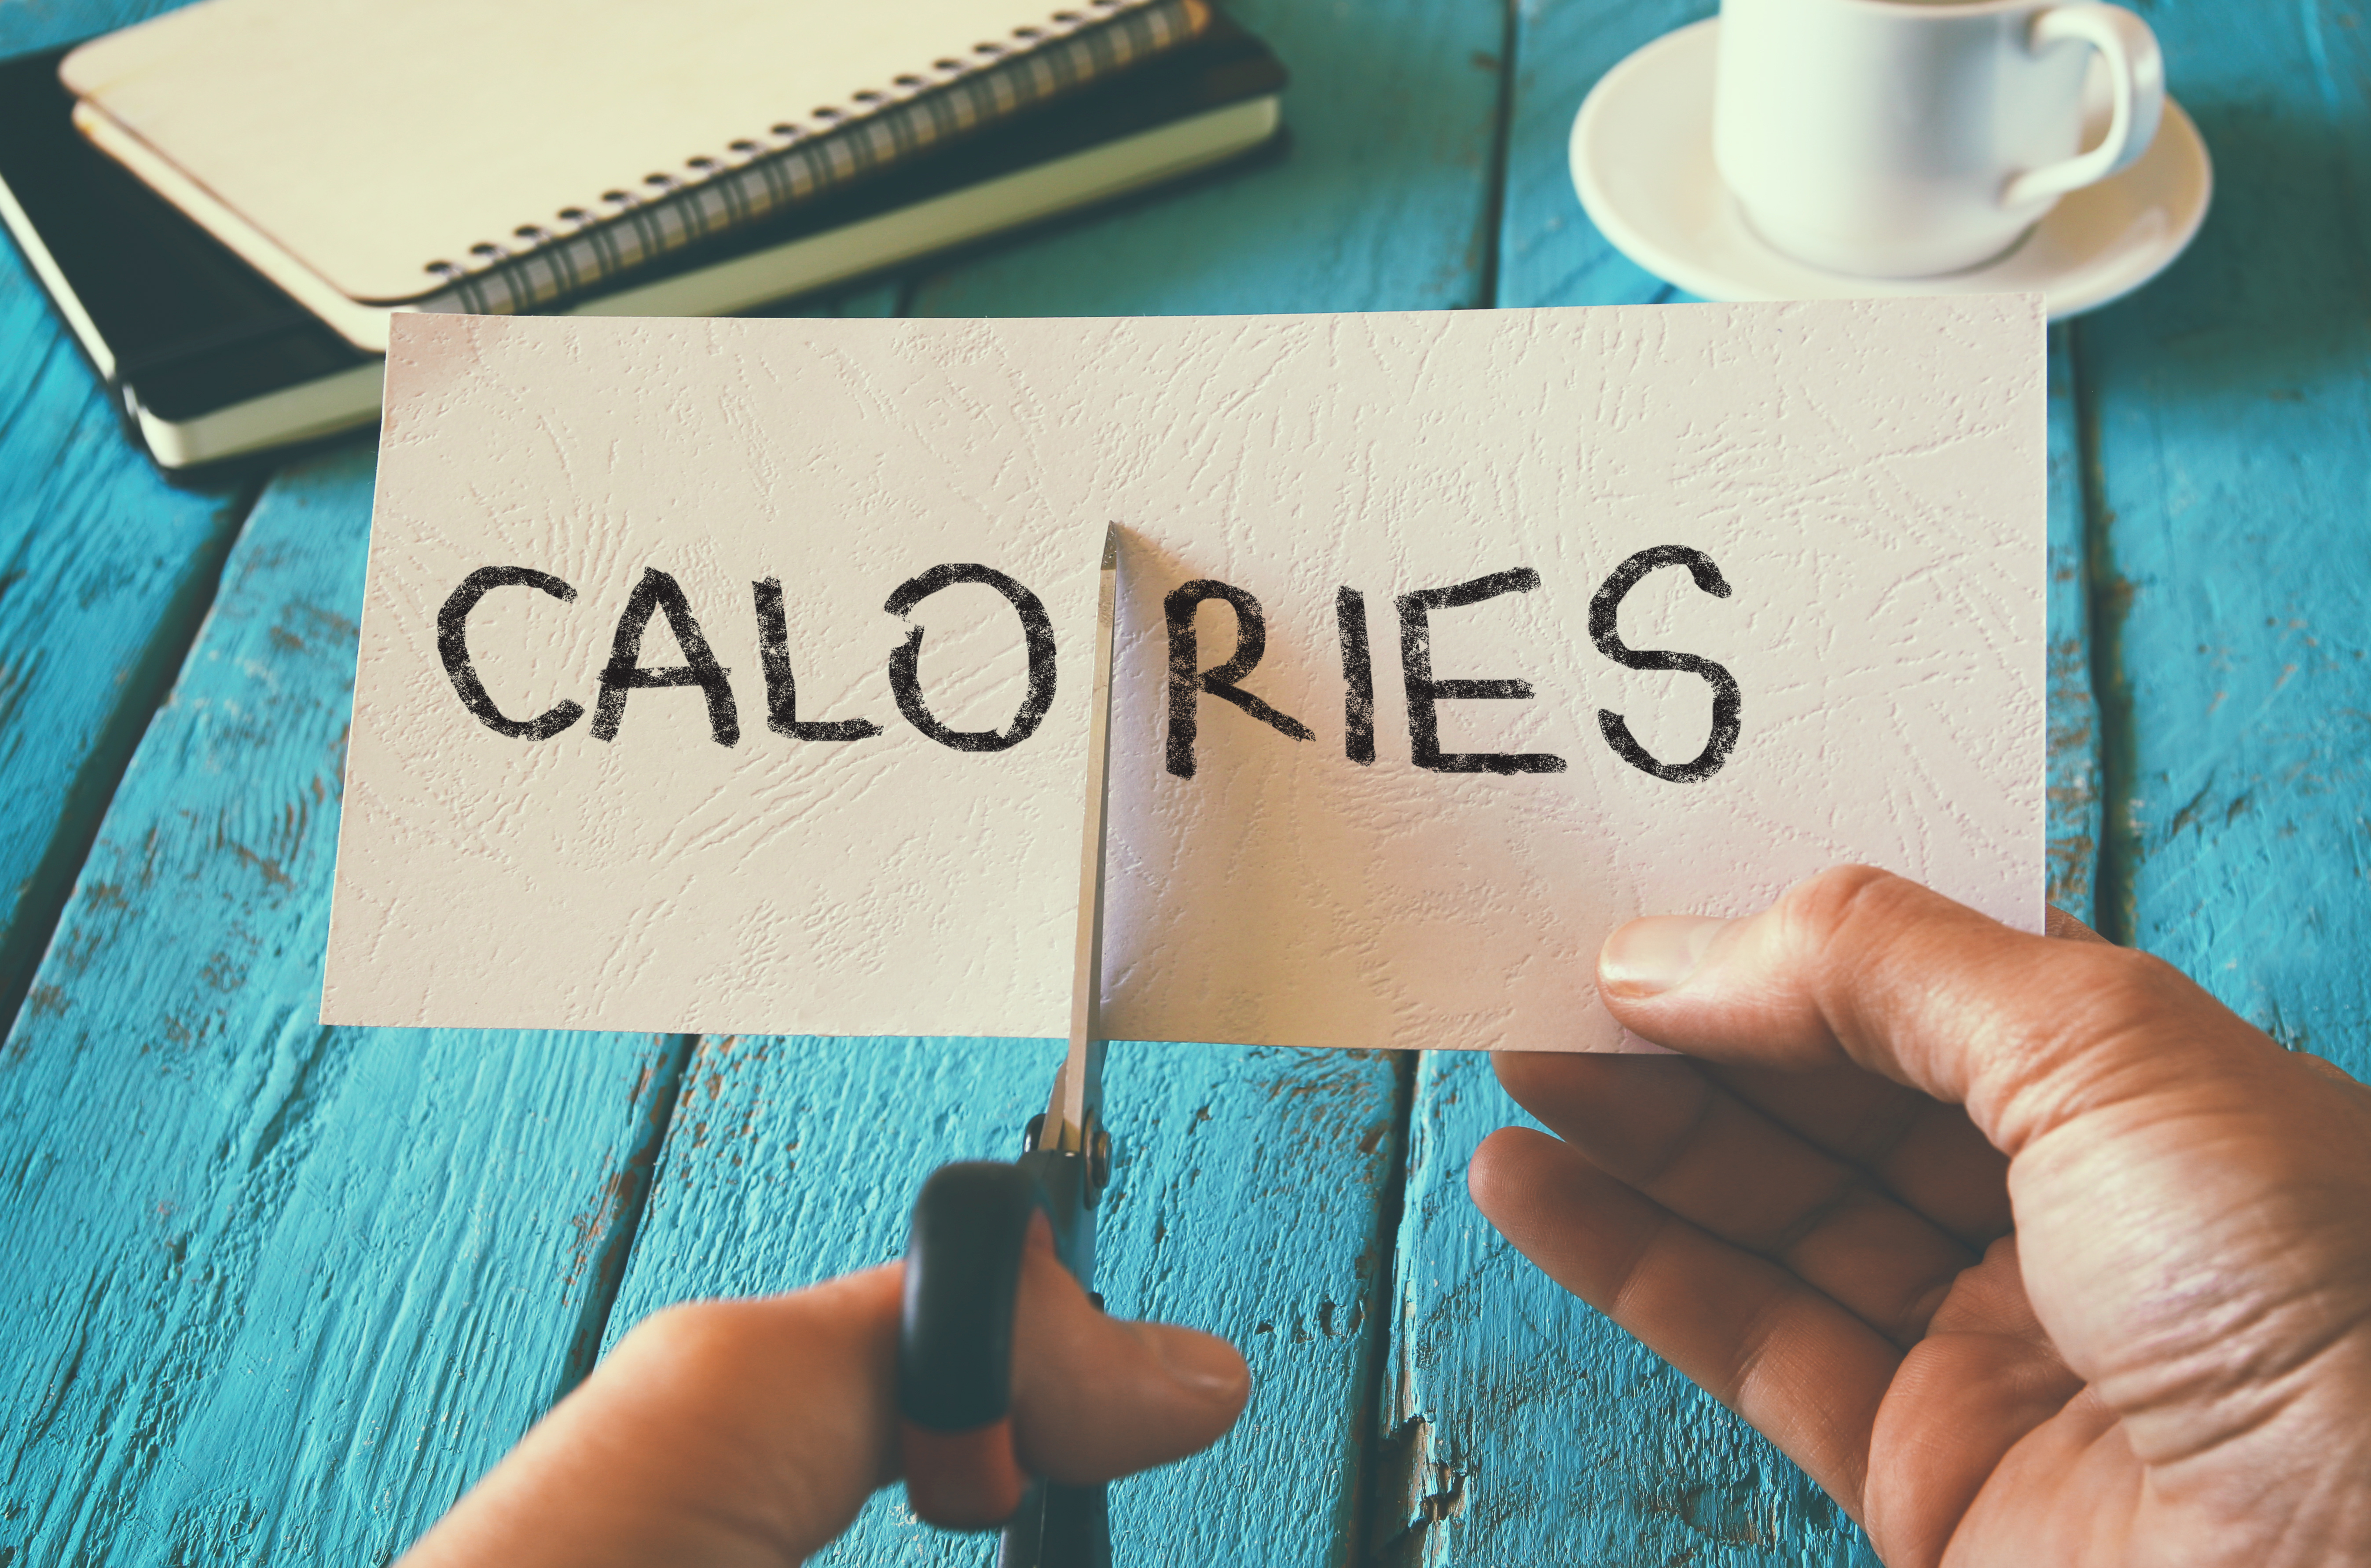 Compter ses calories quotidiennes est non seulement un casse-tête, mais cela pourrait aussi être contre-productif. © Tomertu, Adobe Stock